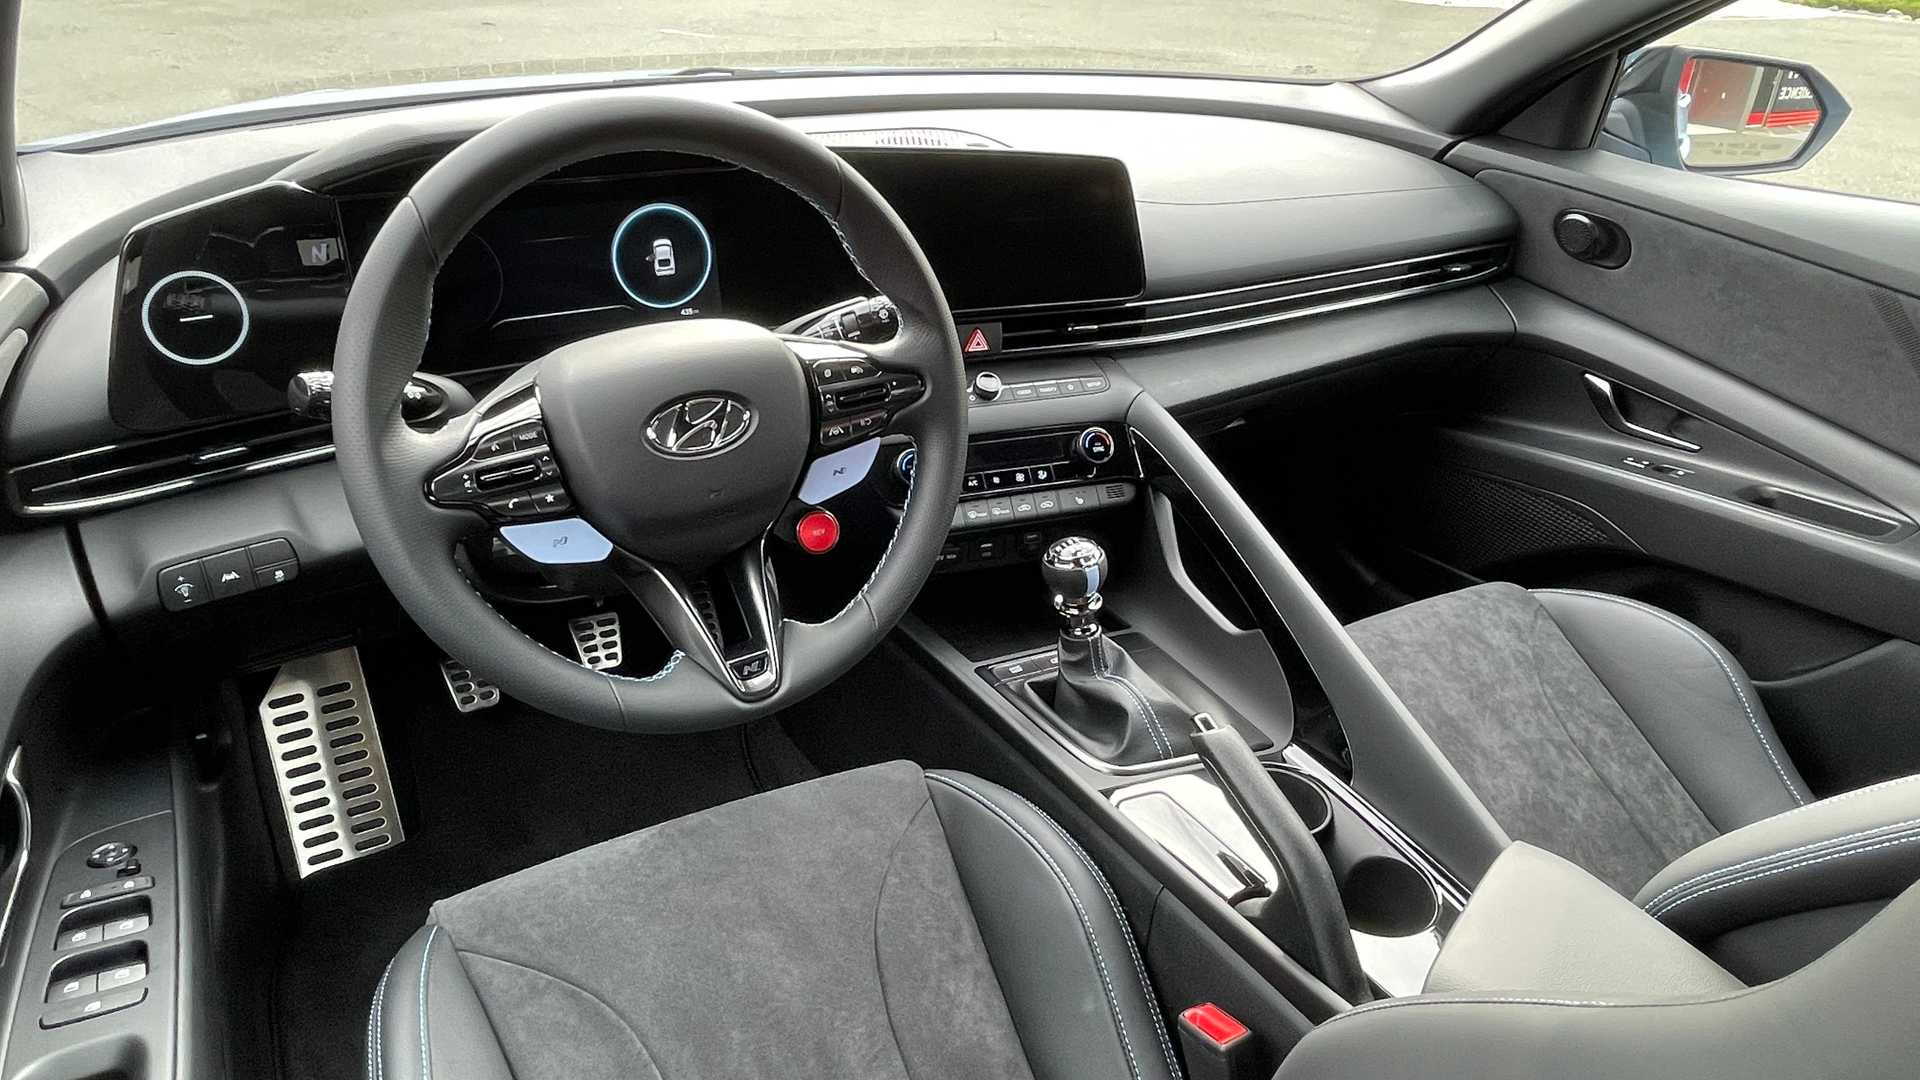 Hyundai Elantra N 2022 xuất hiện tại Việt Nam, đối đầu Honda Civic Type R với giá tiền tỷ hyundai-elantra-n-2022-ve-viet-nam-autodaily-8.jpg